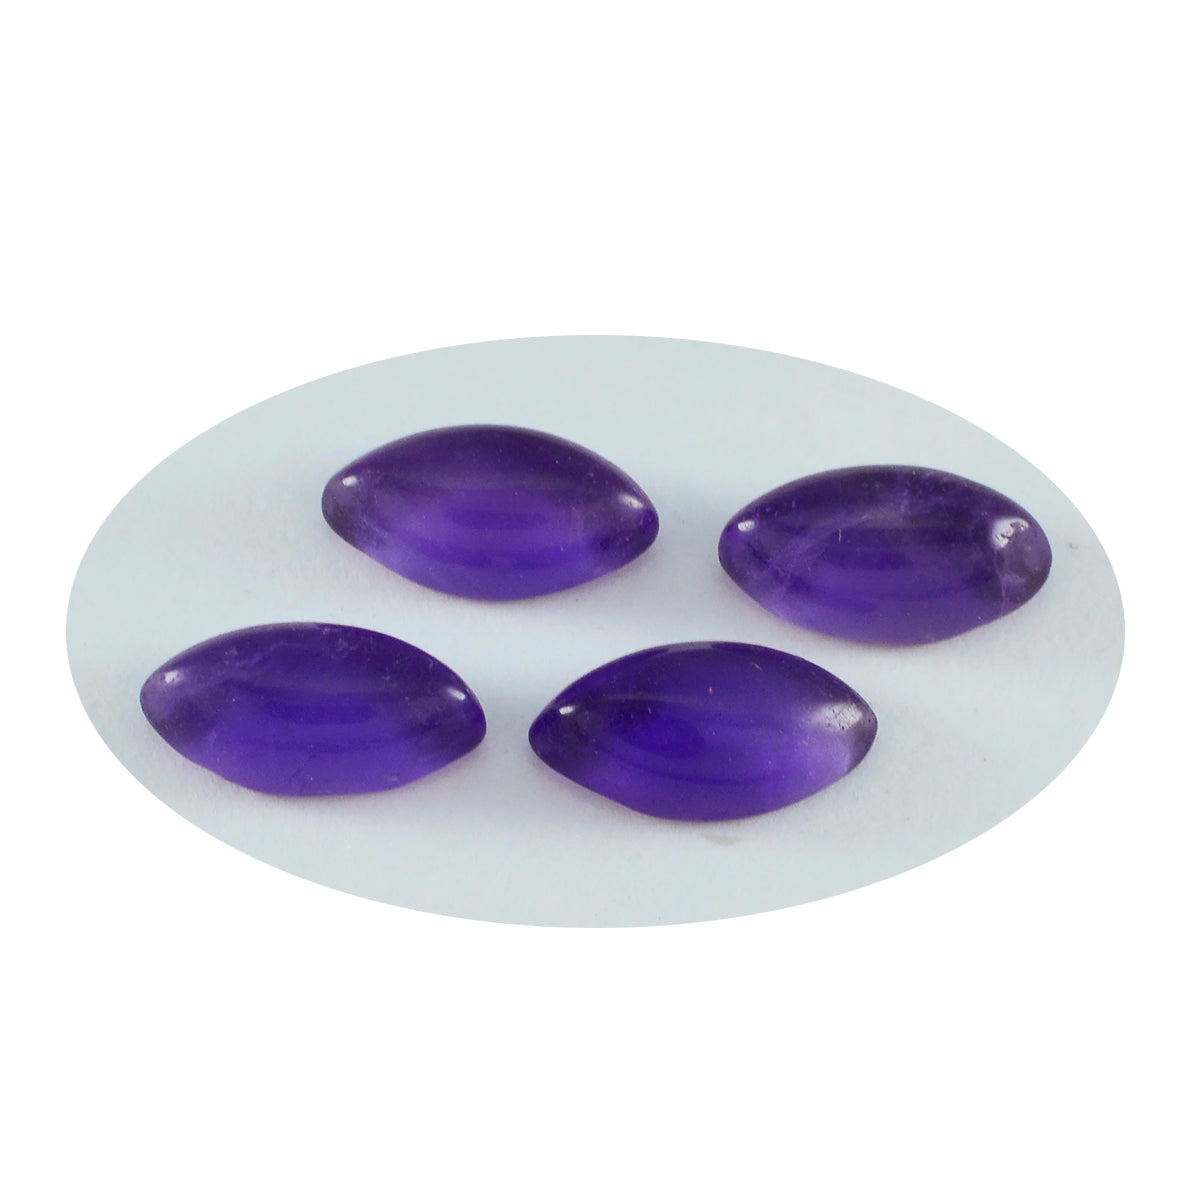 riyogems 1pc cabochon d'améthyste violet 6x12 mm forme marquise jolie pierre précieuse de qualité